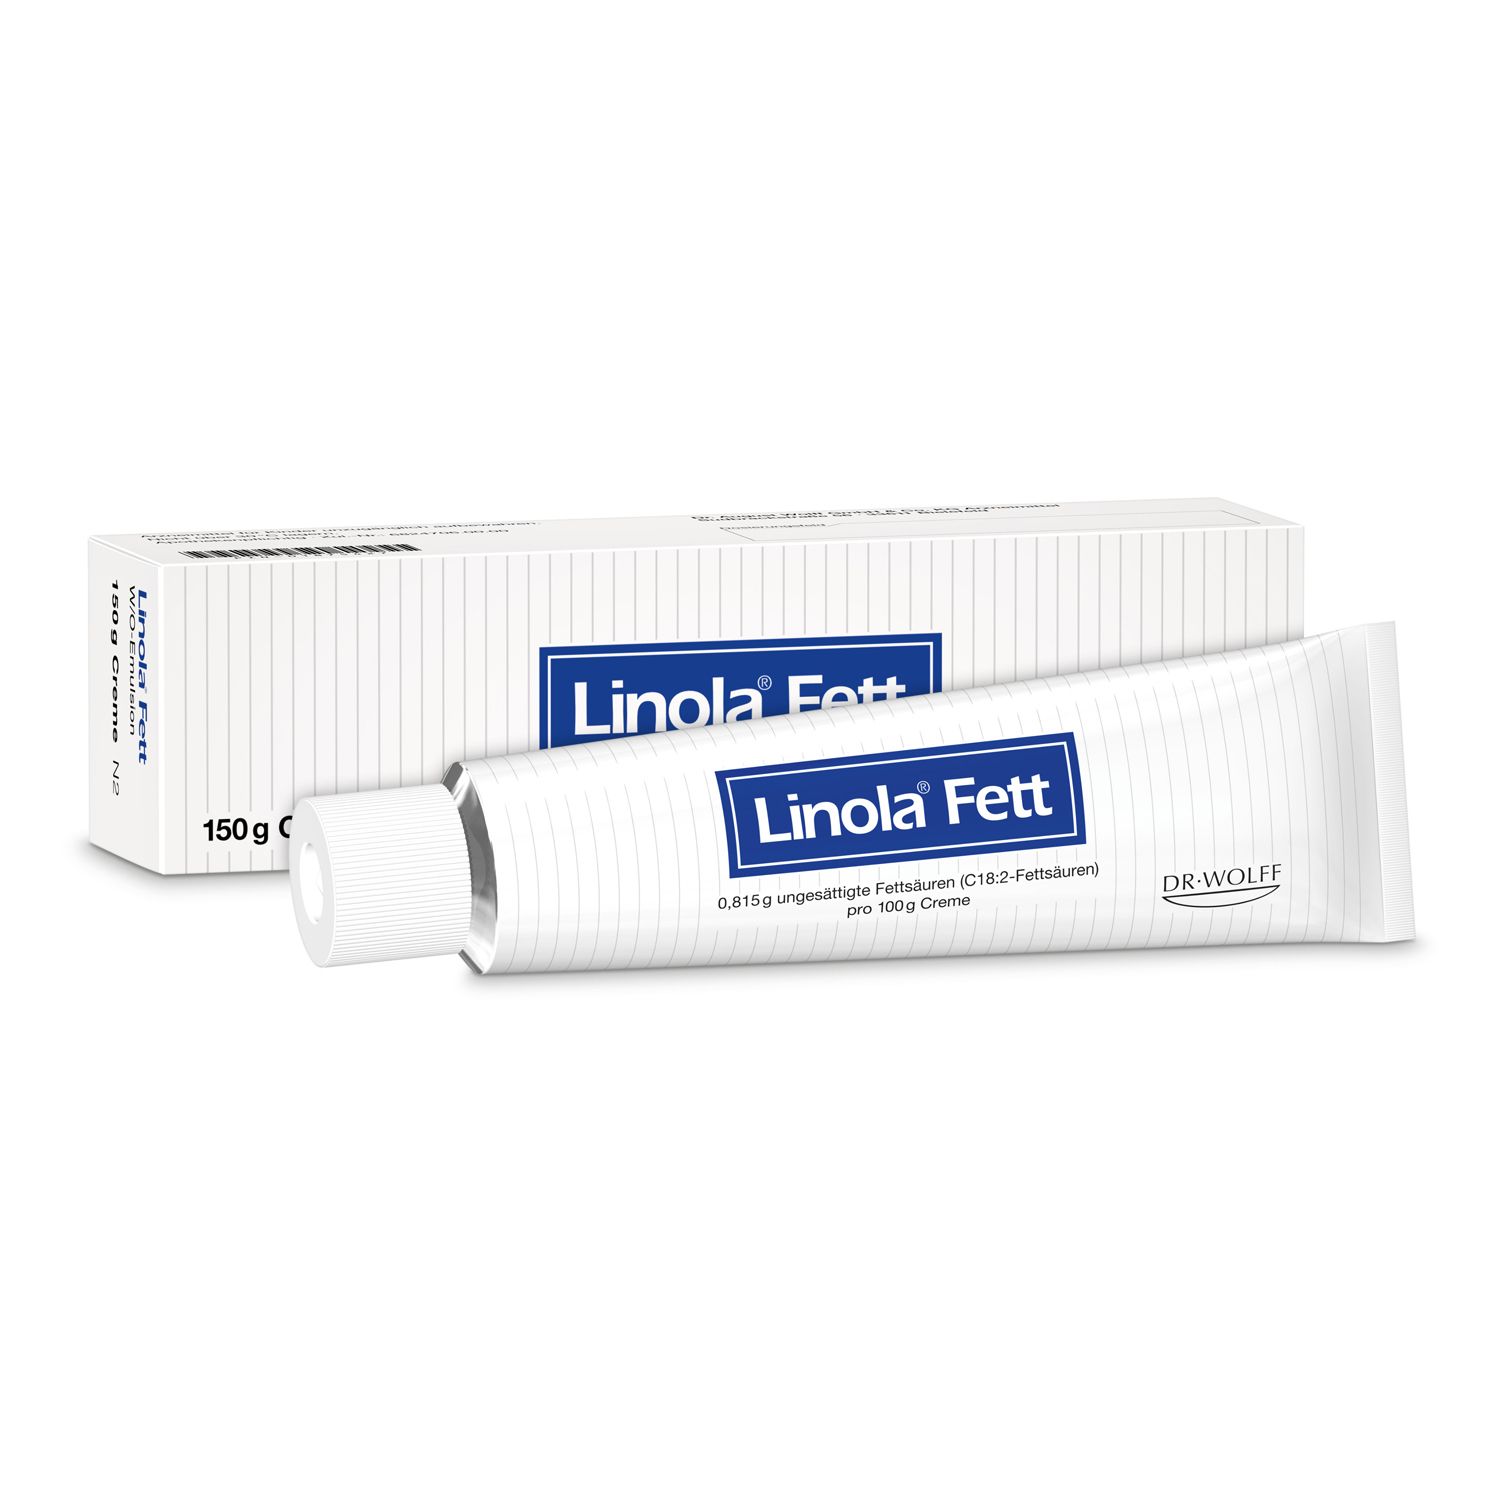 Linola Fett - Fettcreme für sehr trockene, rissige oder juckende Haut und bei Neurodermitis